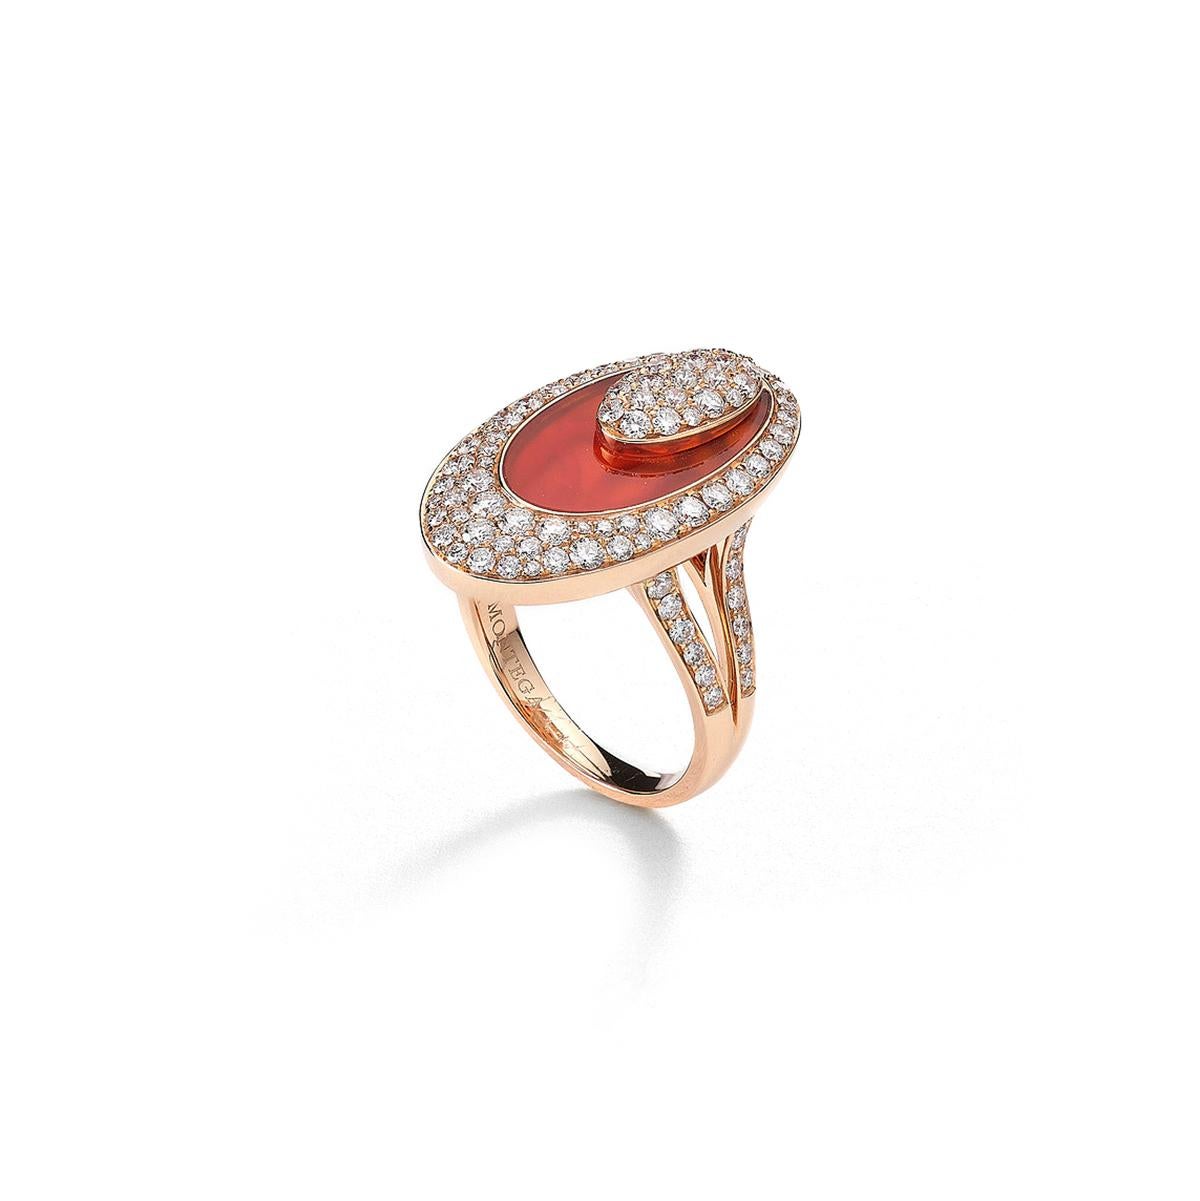 Ring aus 18 Karat Rotgold mit 96 Diamanten von 1,41 Karat und einem Karneol von 3,34 Karat besetzt Größe 54   